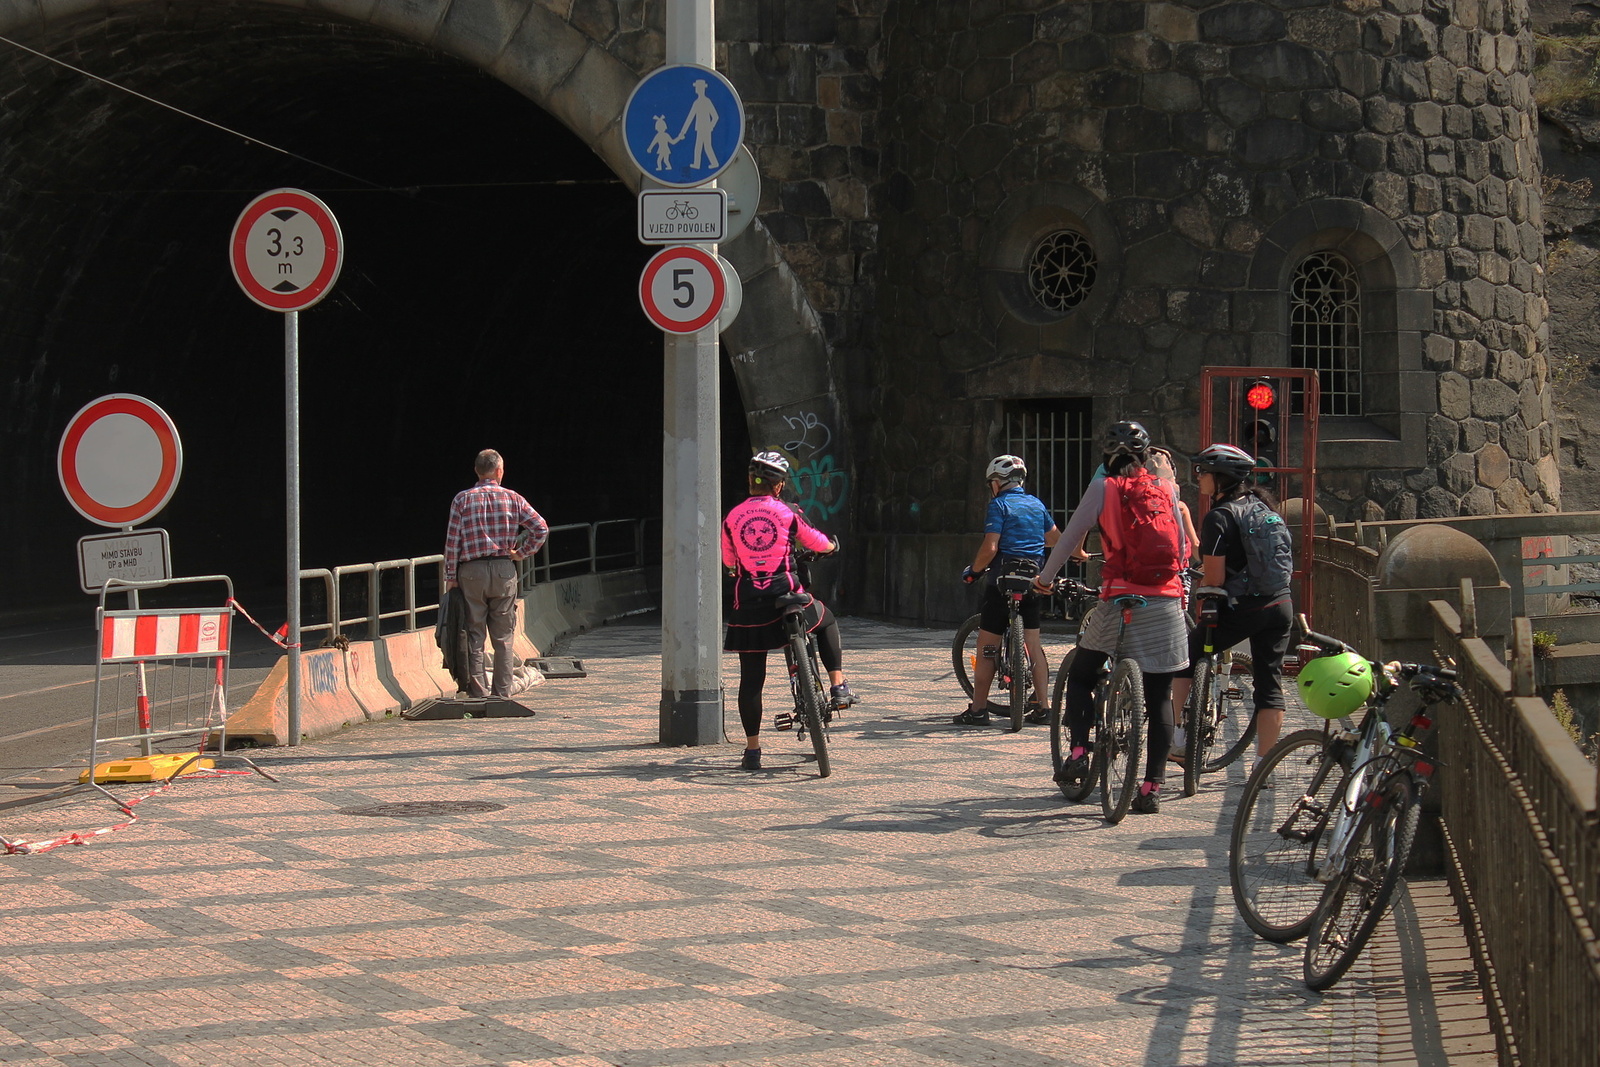 OBRAZEM: Chodce a cyklisty řídí ve Vyšehradském tunelu semafor - Pražský  deník